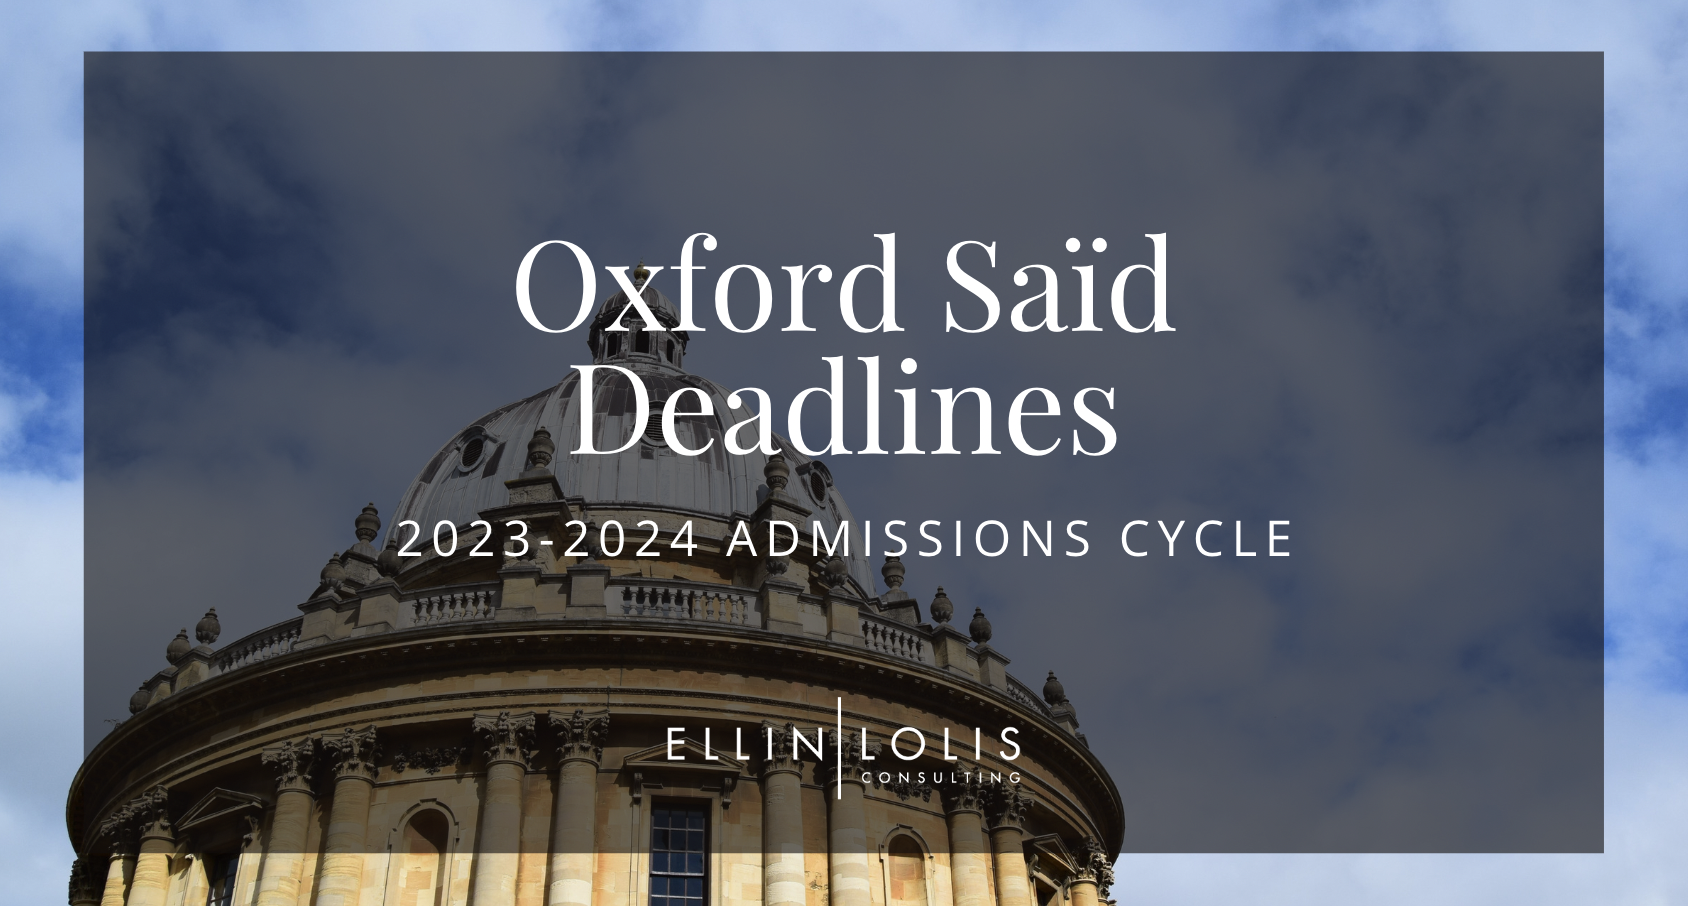 Oxford Saïd MBA Deadlines for 2023-2024